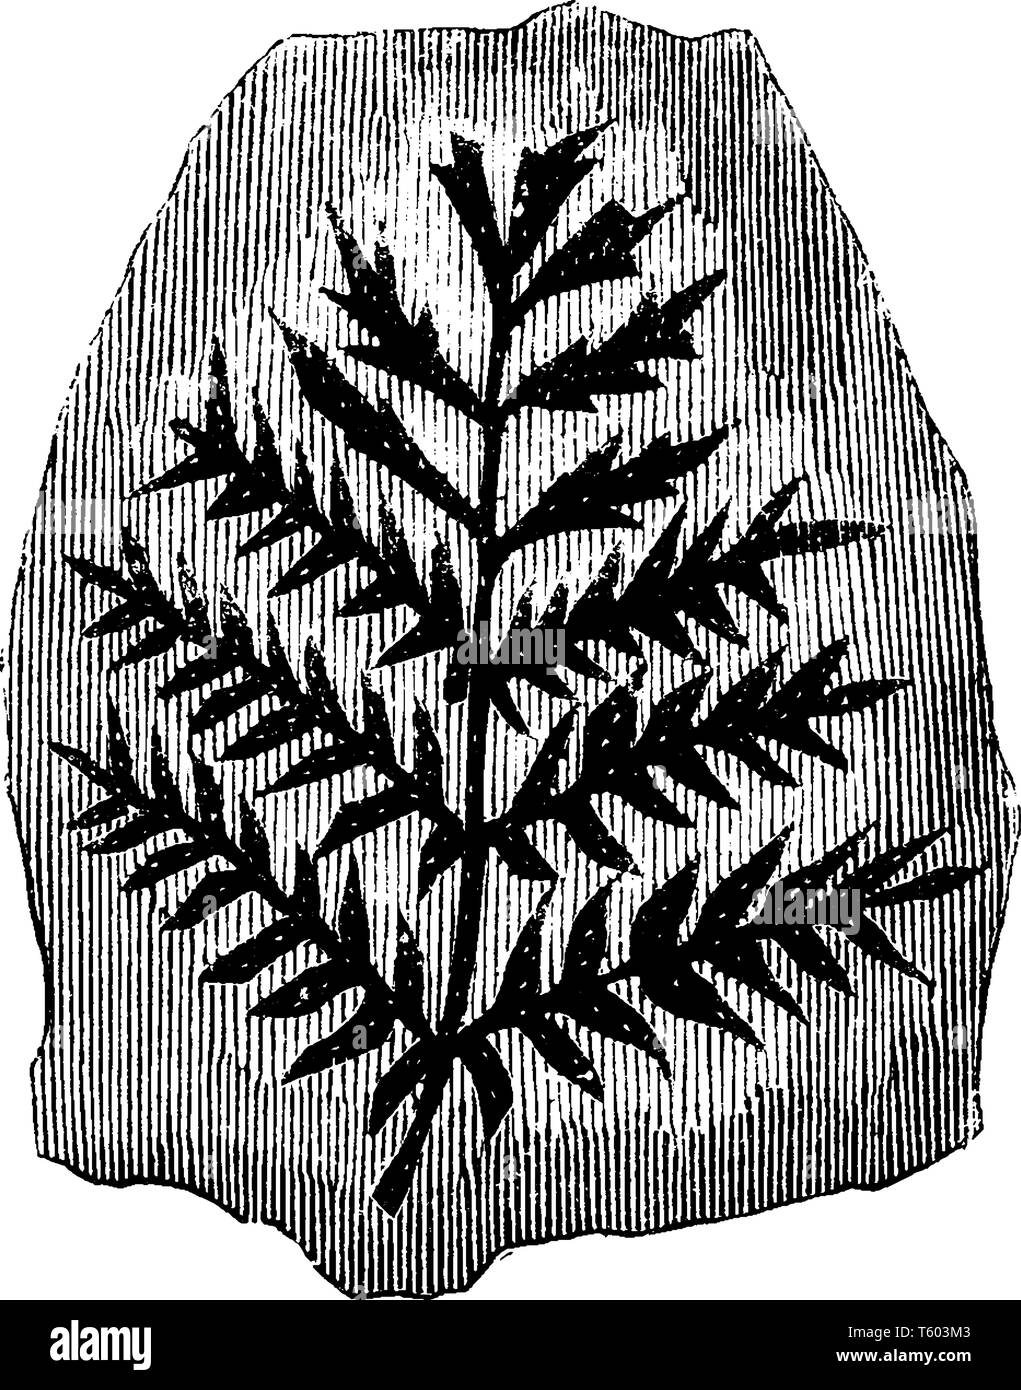 Das Bild zeigt die versteinerte Kohle Farne der alten Baum, der häufig mit kohleflöze, vintage Strichzeichnung oder Gravur illustratio Stock Vektor